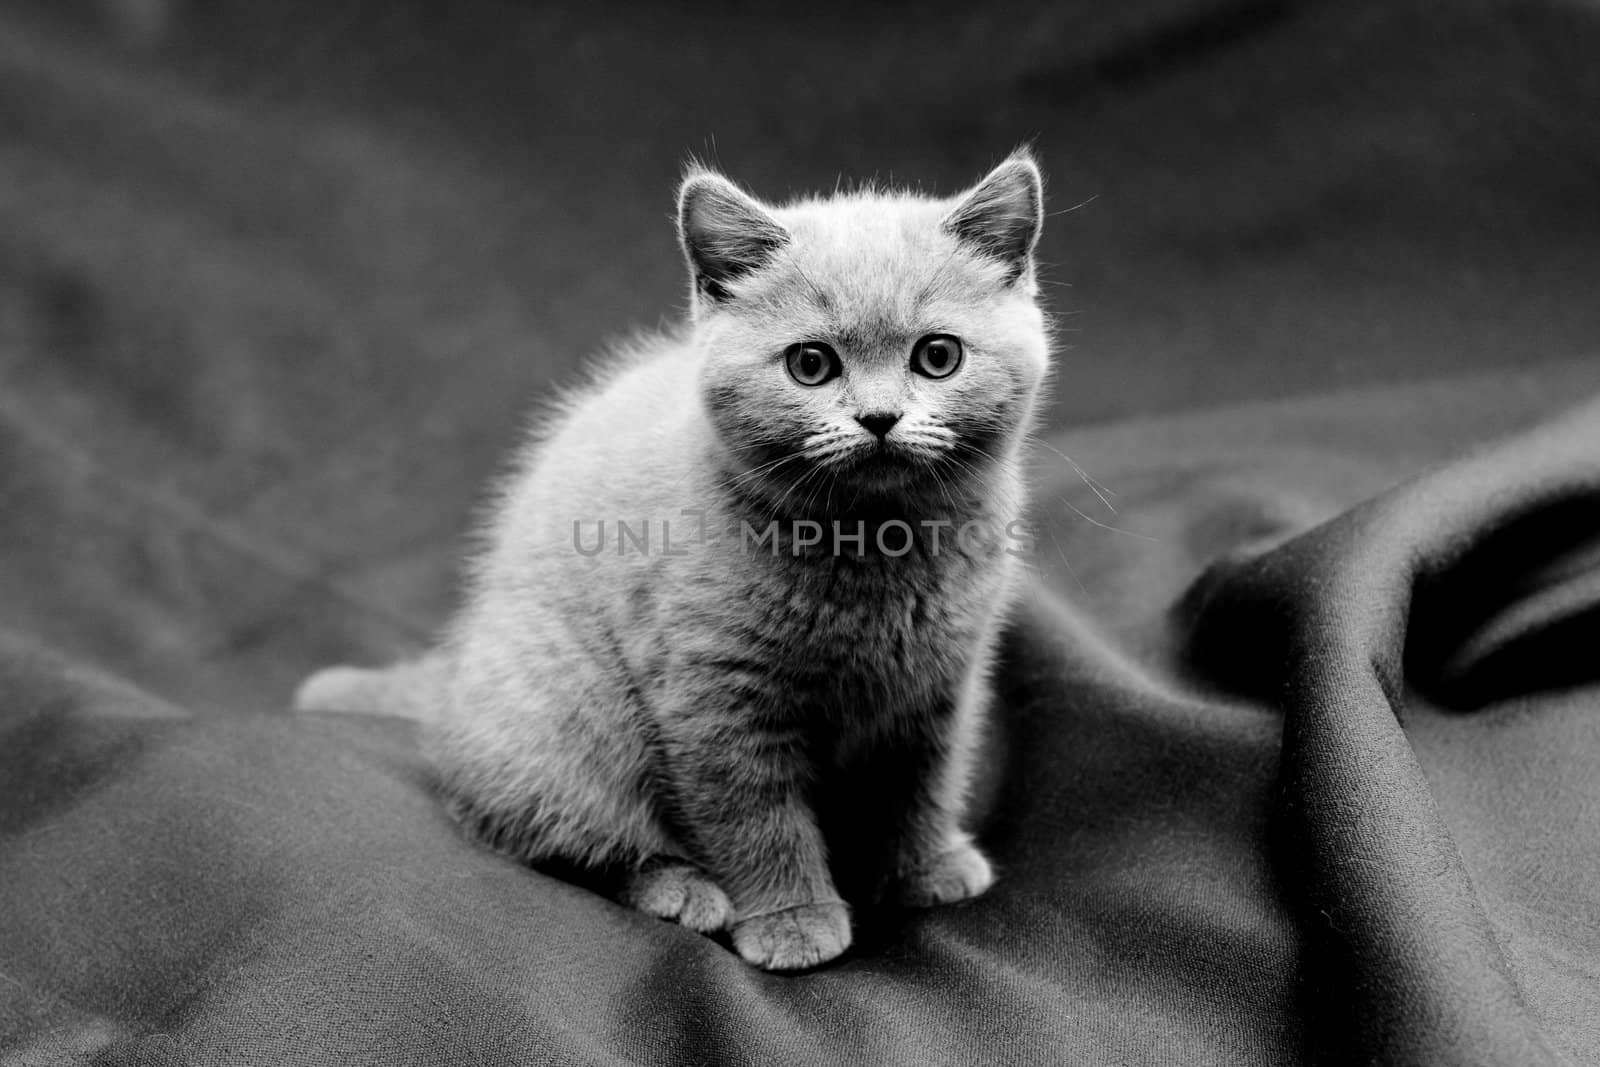 A British shorthair blue kitten on textile background
